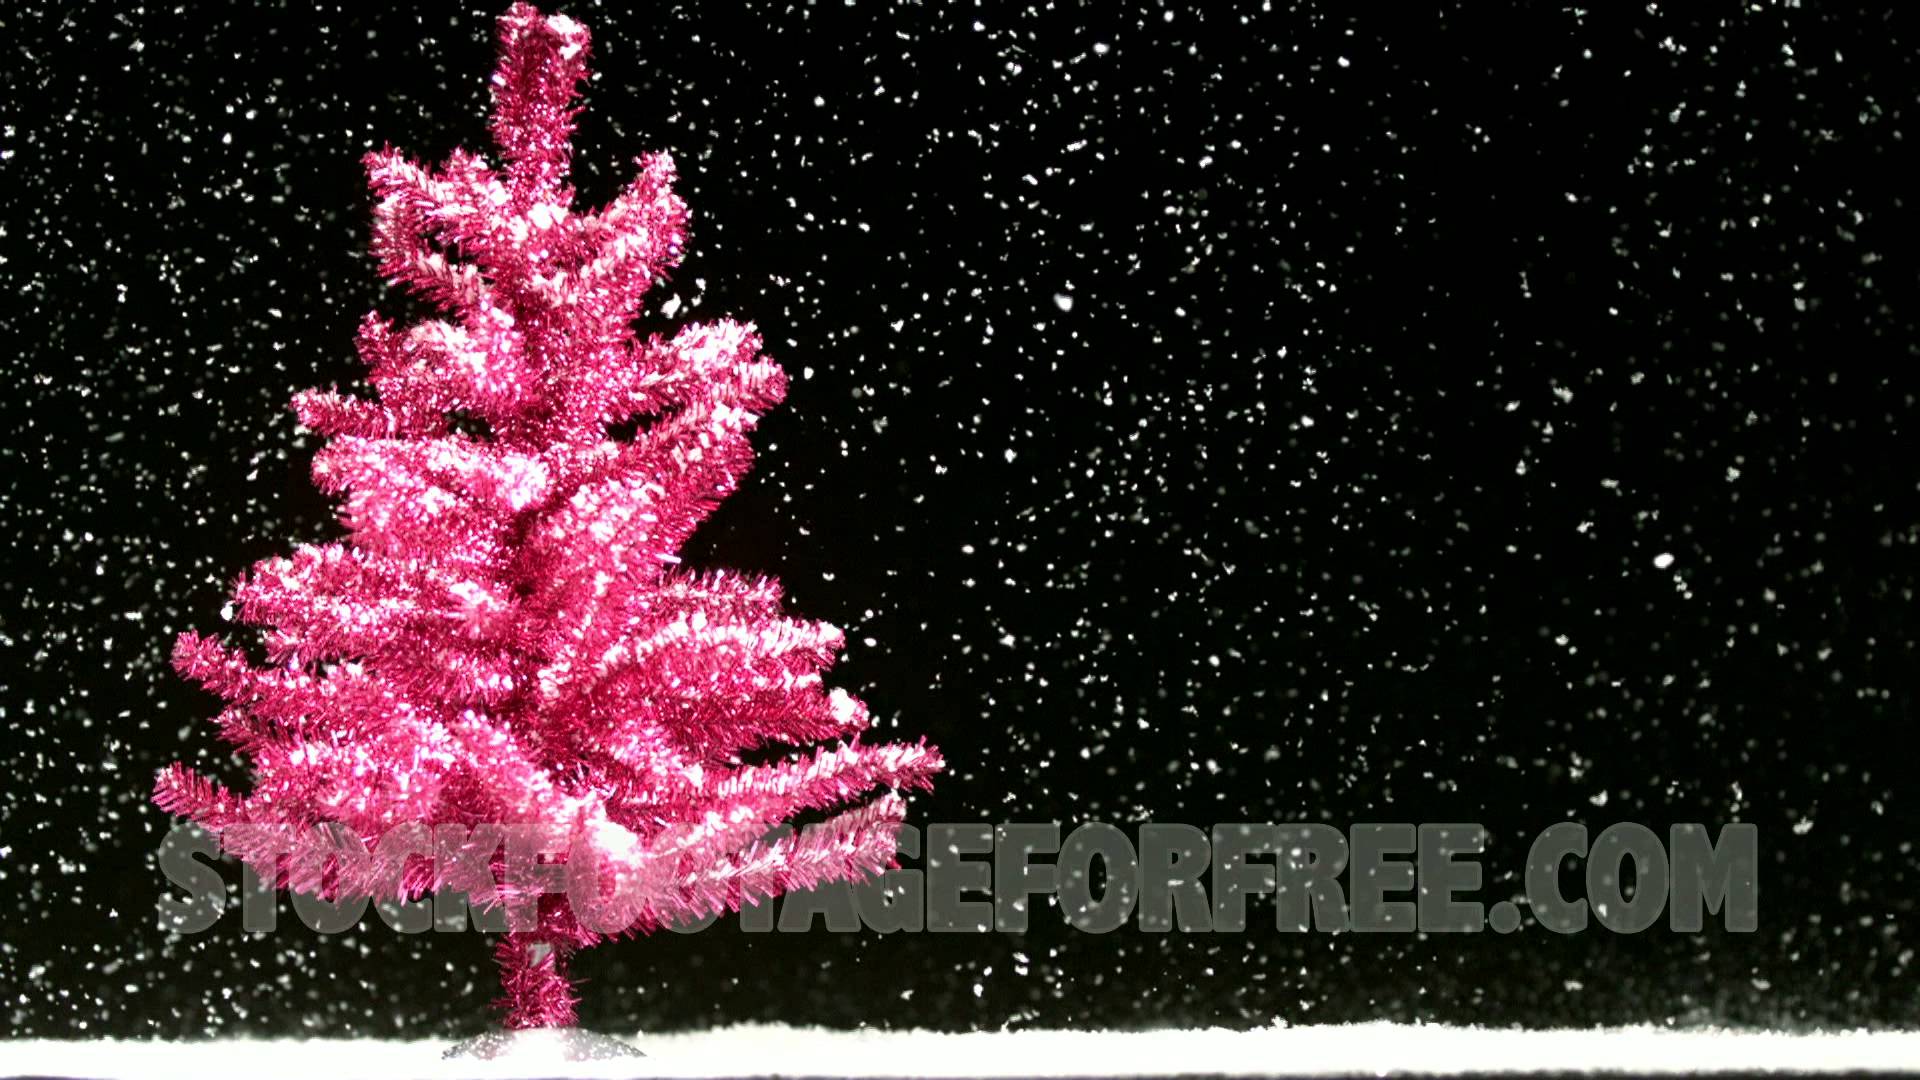 Đón Giáng sinh đầy màu sắc và thật mới lạ với cây thông màu hồng đầy bất ngờ. Chúng mang đến sự ấm áp, thân thiện đến mọi người. Hãy cùng chiêm ngưỡng những hình ảnh rực rỡ của cây thông Giáng sinh màu hồng, và cùng chia sẻ niềm vui đến với mọi người.